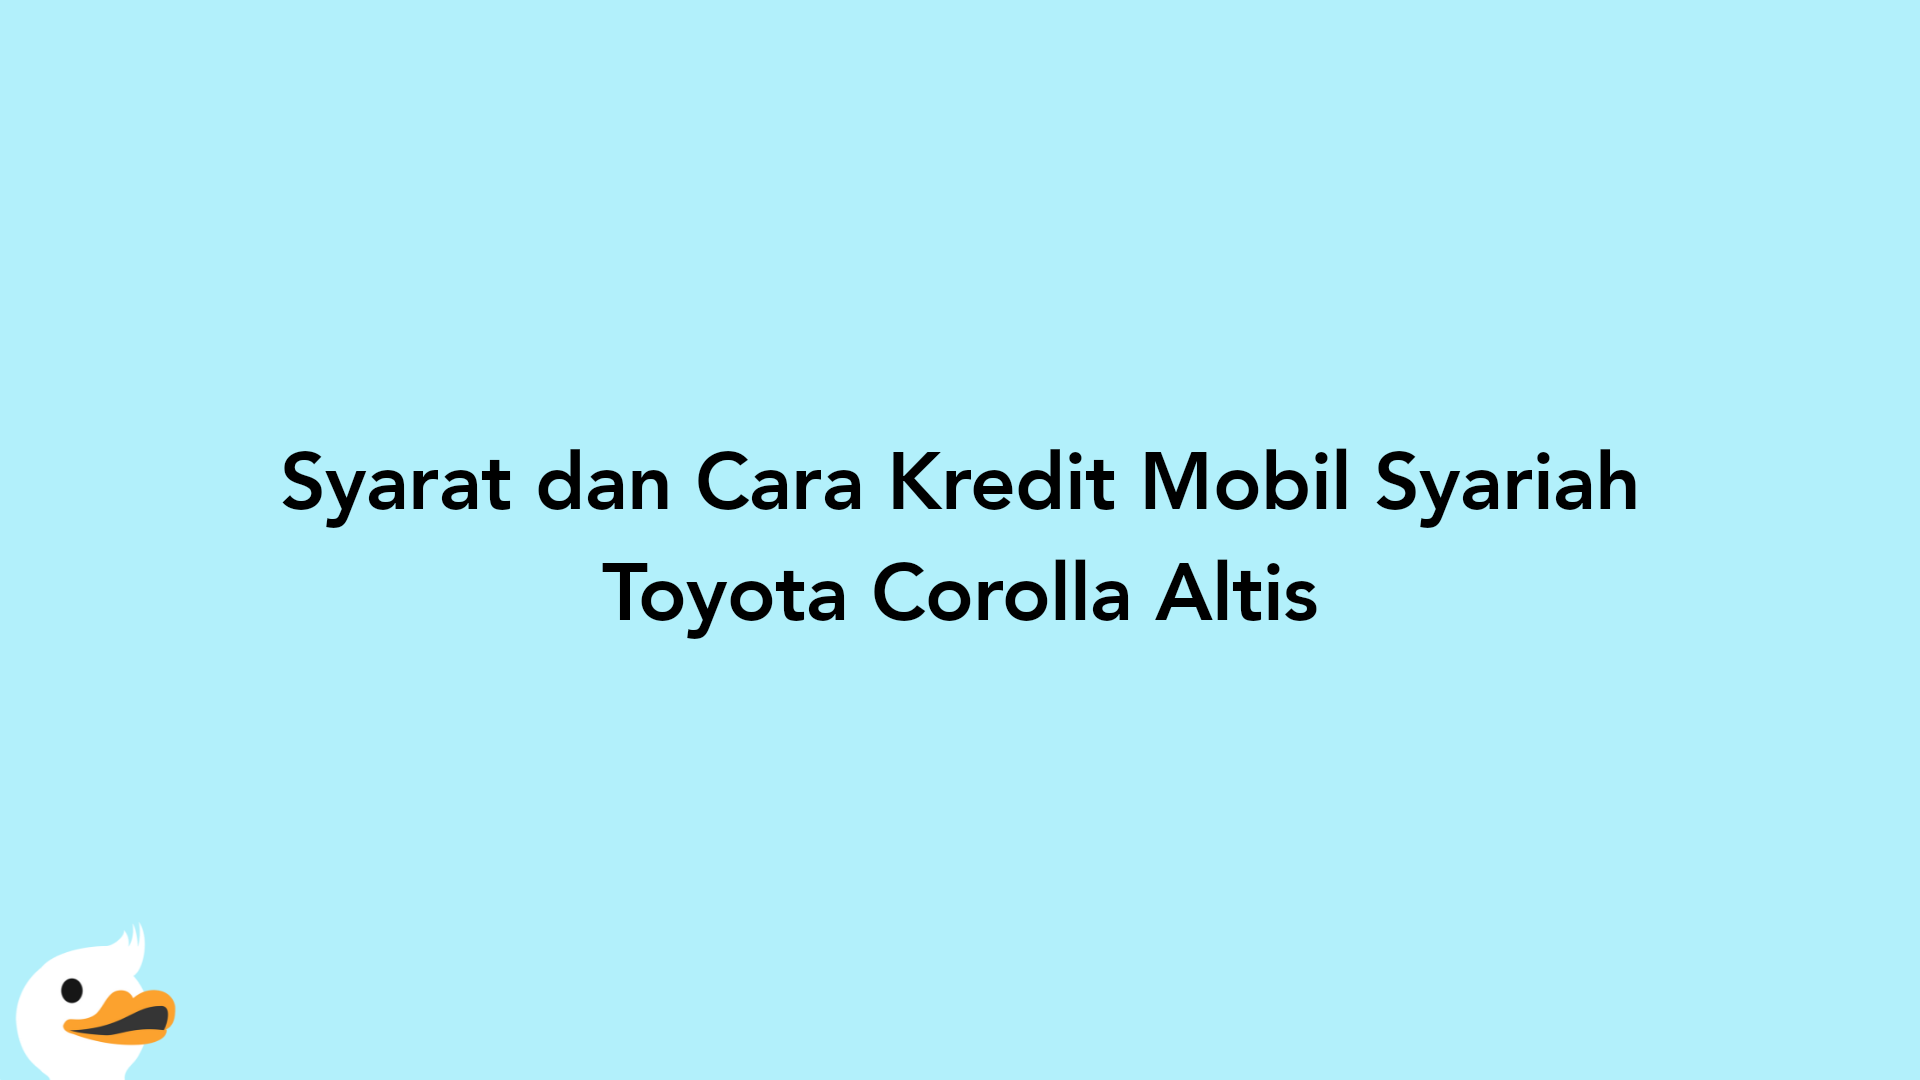 Syarat dan Cara Kredit Mobil Syariah Toyota Corolla Altis